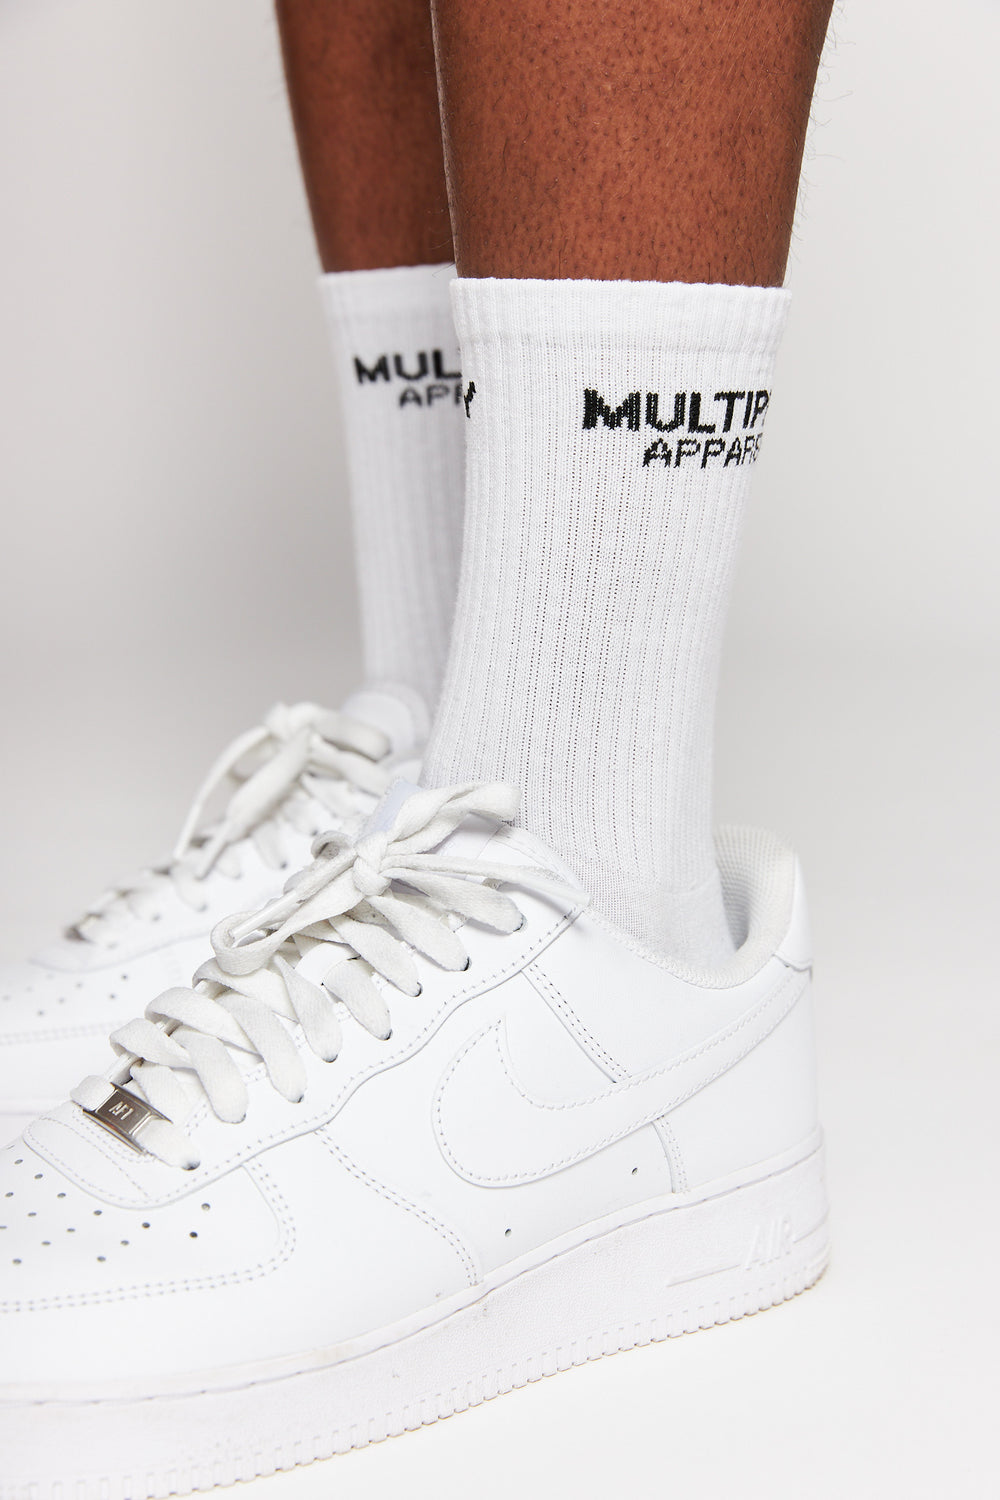 Socken "MULTIPLY" 3er Pack